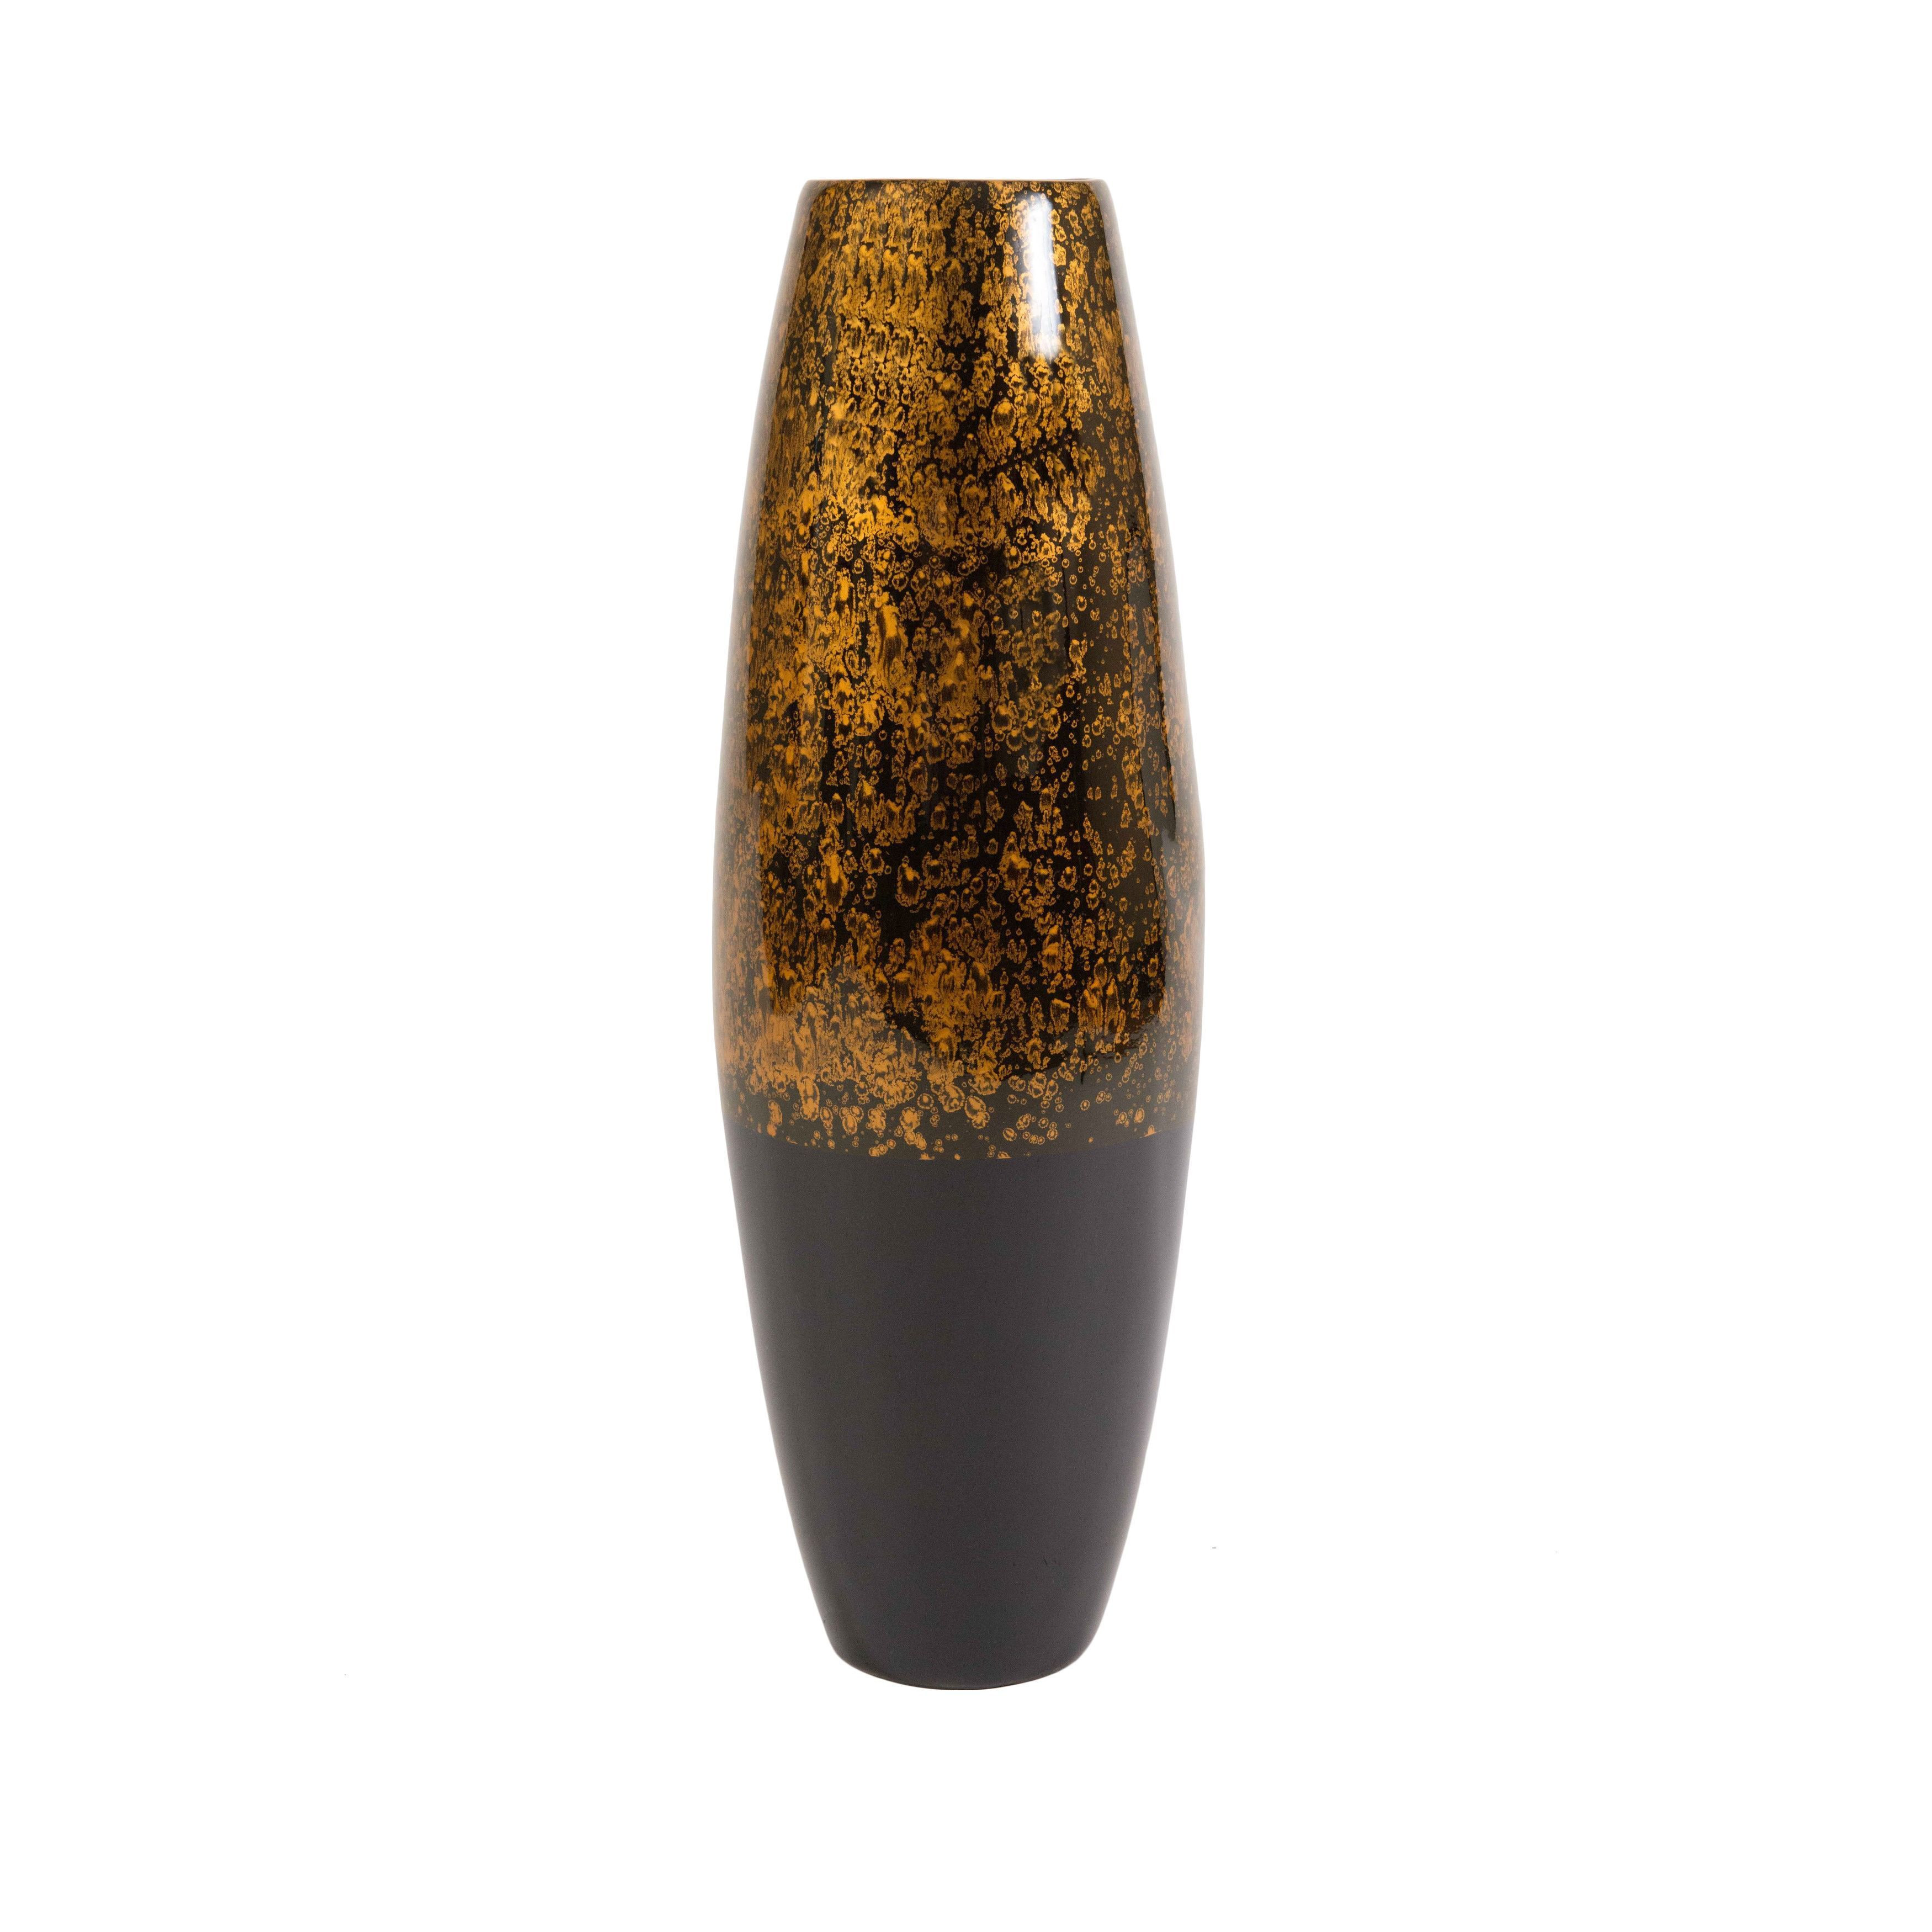 ceramic floor vase of 33 wayfair floor vases the weekly world inside 33 wayfair floor vases